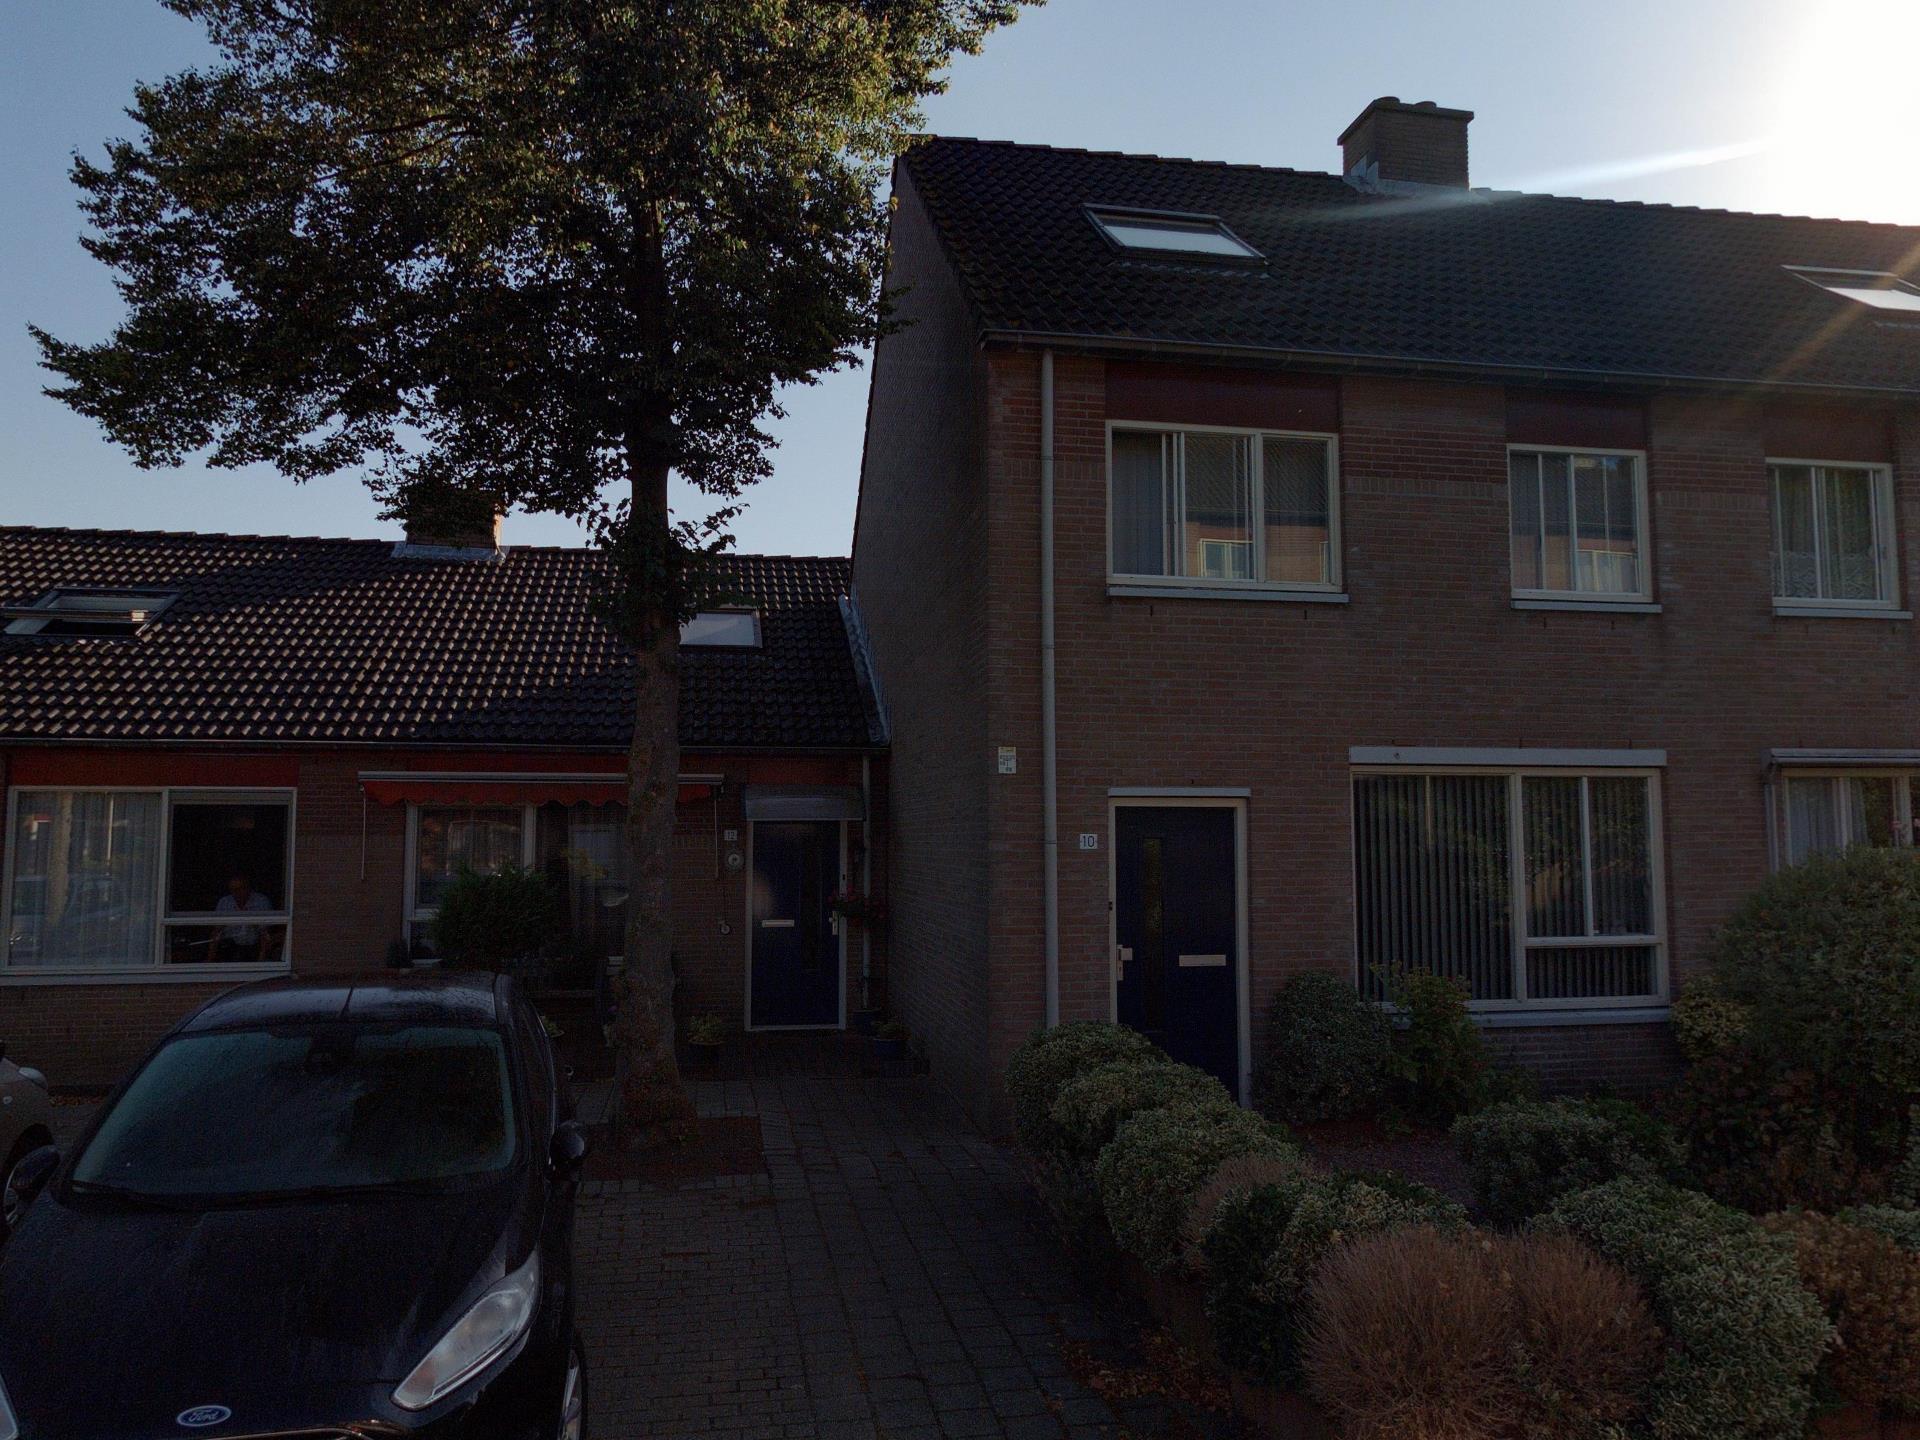 Juliana de Lannoystraat 12, 4822 VN Breda, Nederland